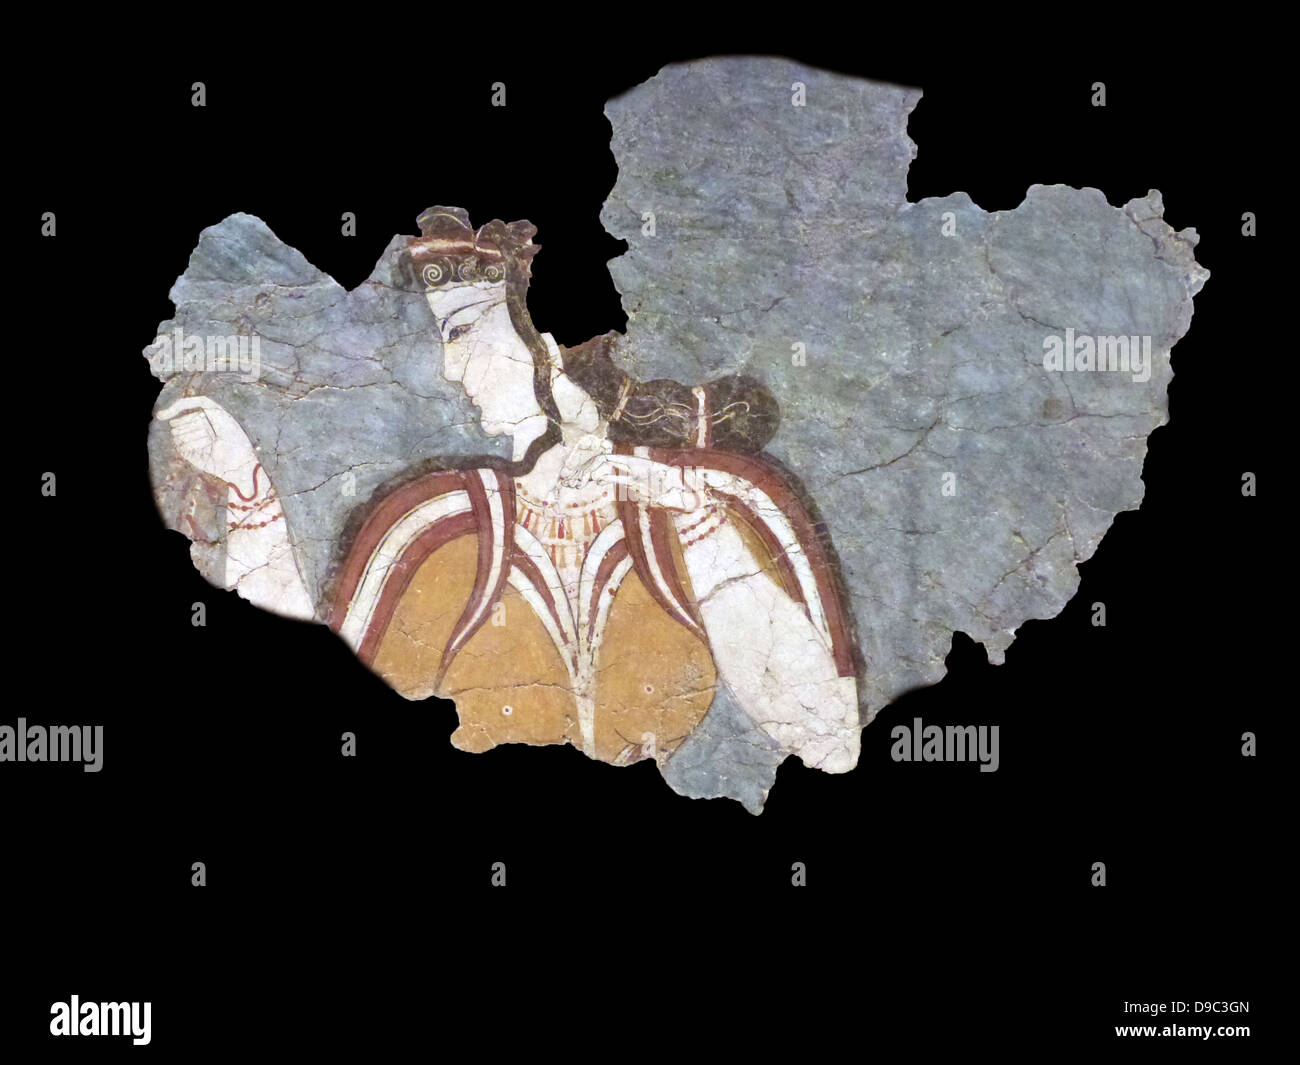 Pitture Murali formano l'acropoli di Micene. Immagini iconografico presi dal mondo naturale o le cerimonie religiose dal royal court. Foto Stock